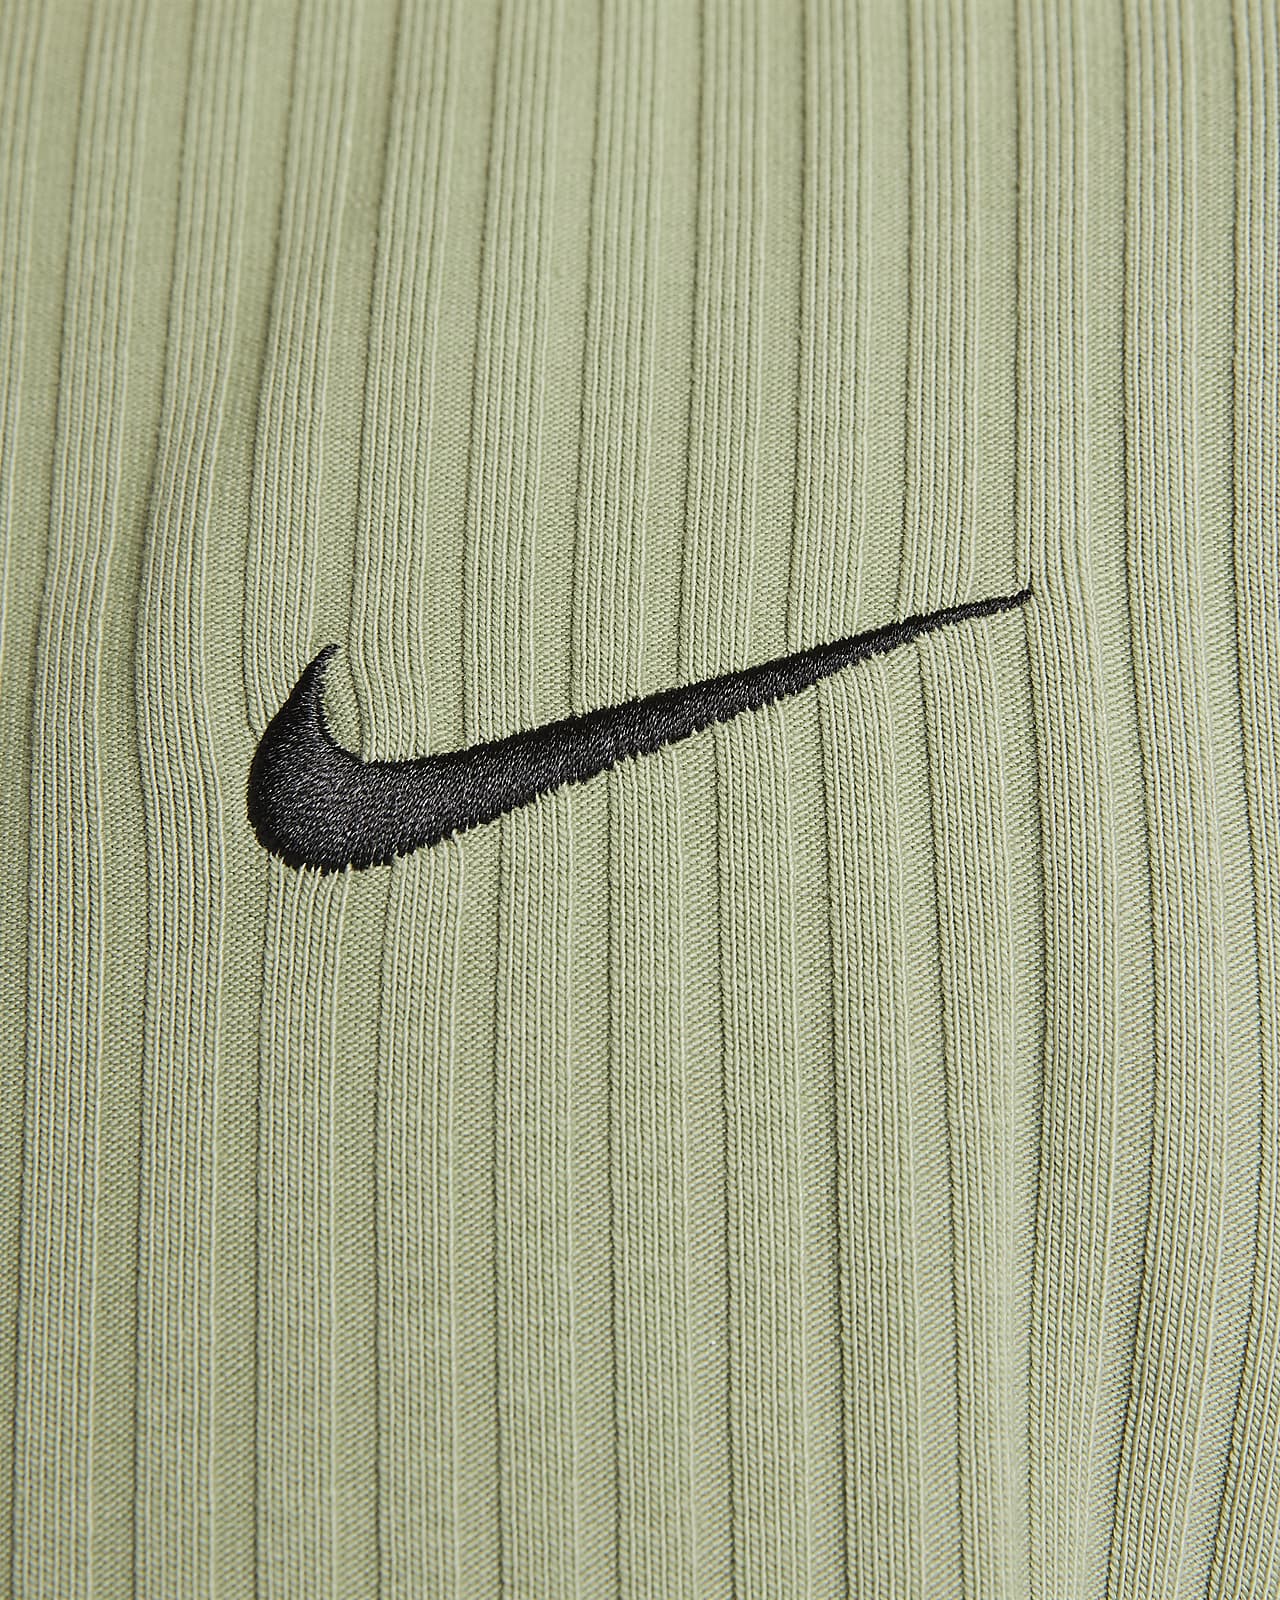 Nike Sportswear Ribbed Jersey Short Sleeve Top - Women's 